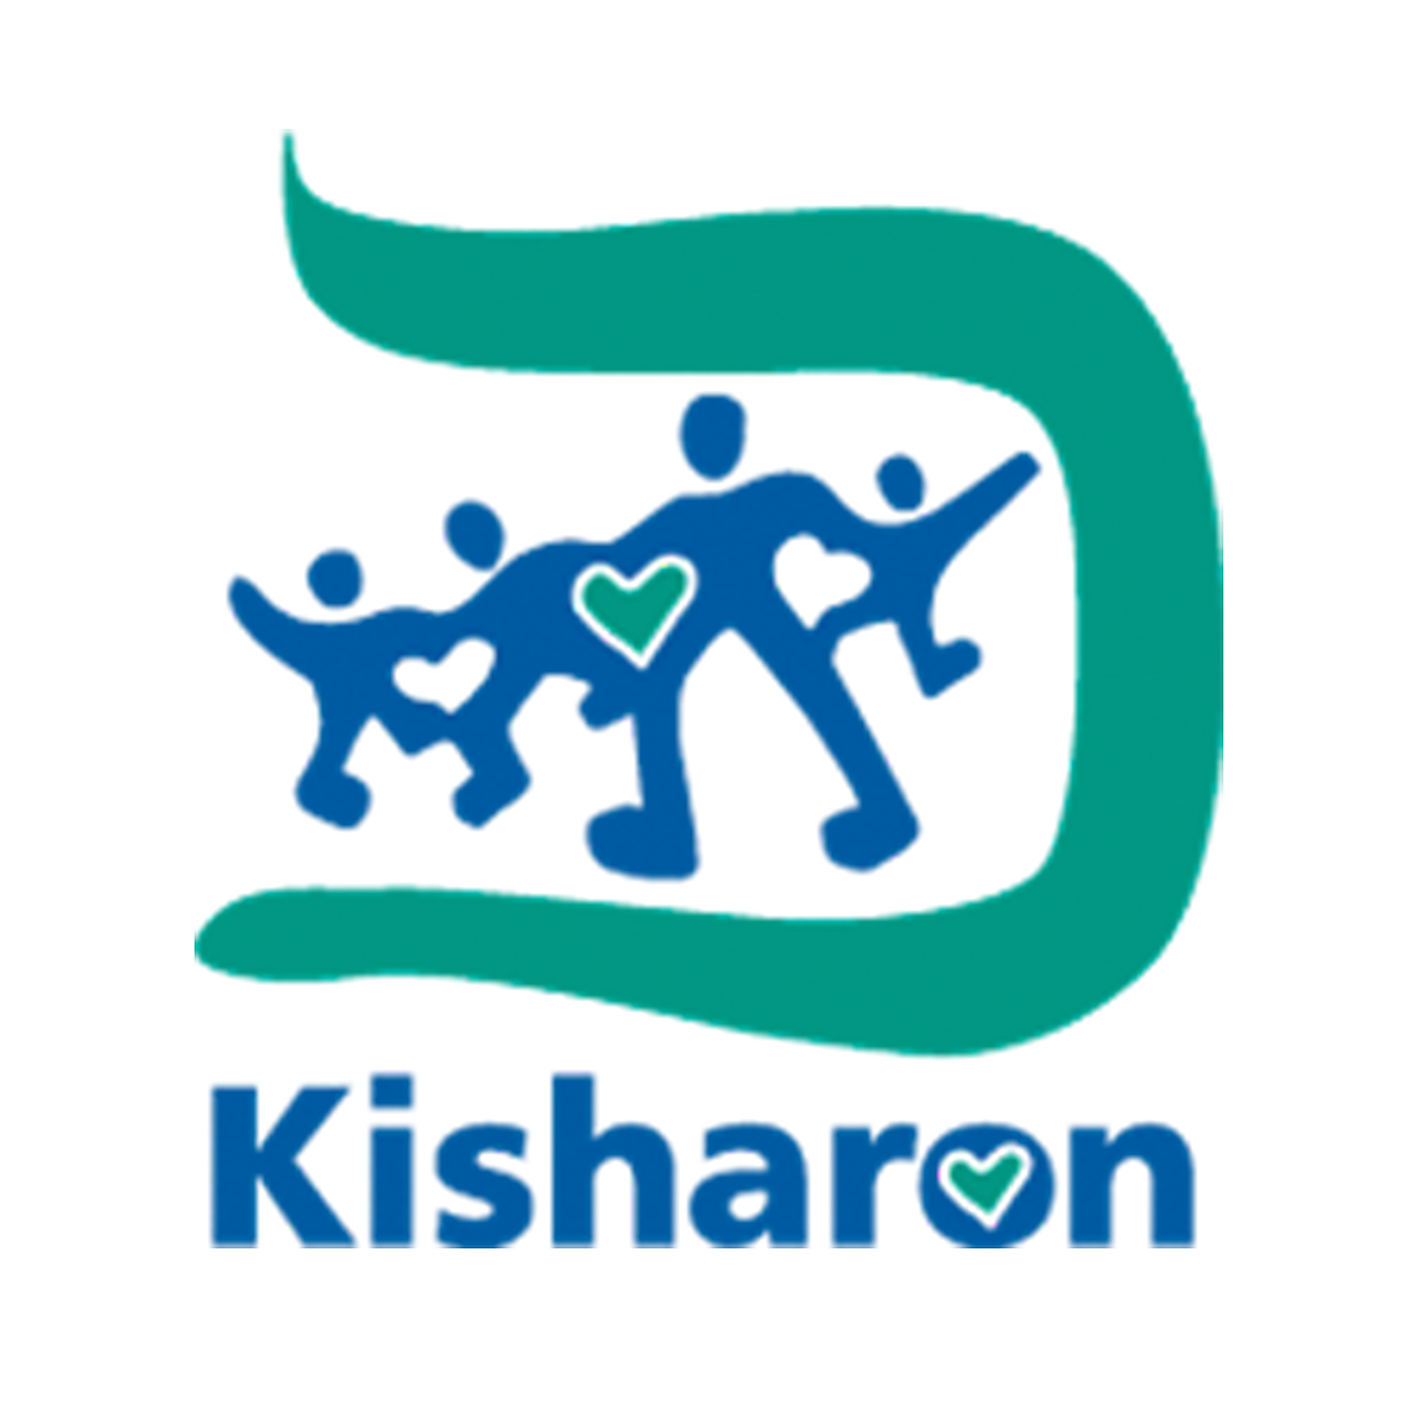 Kisharon